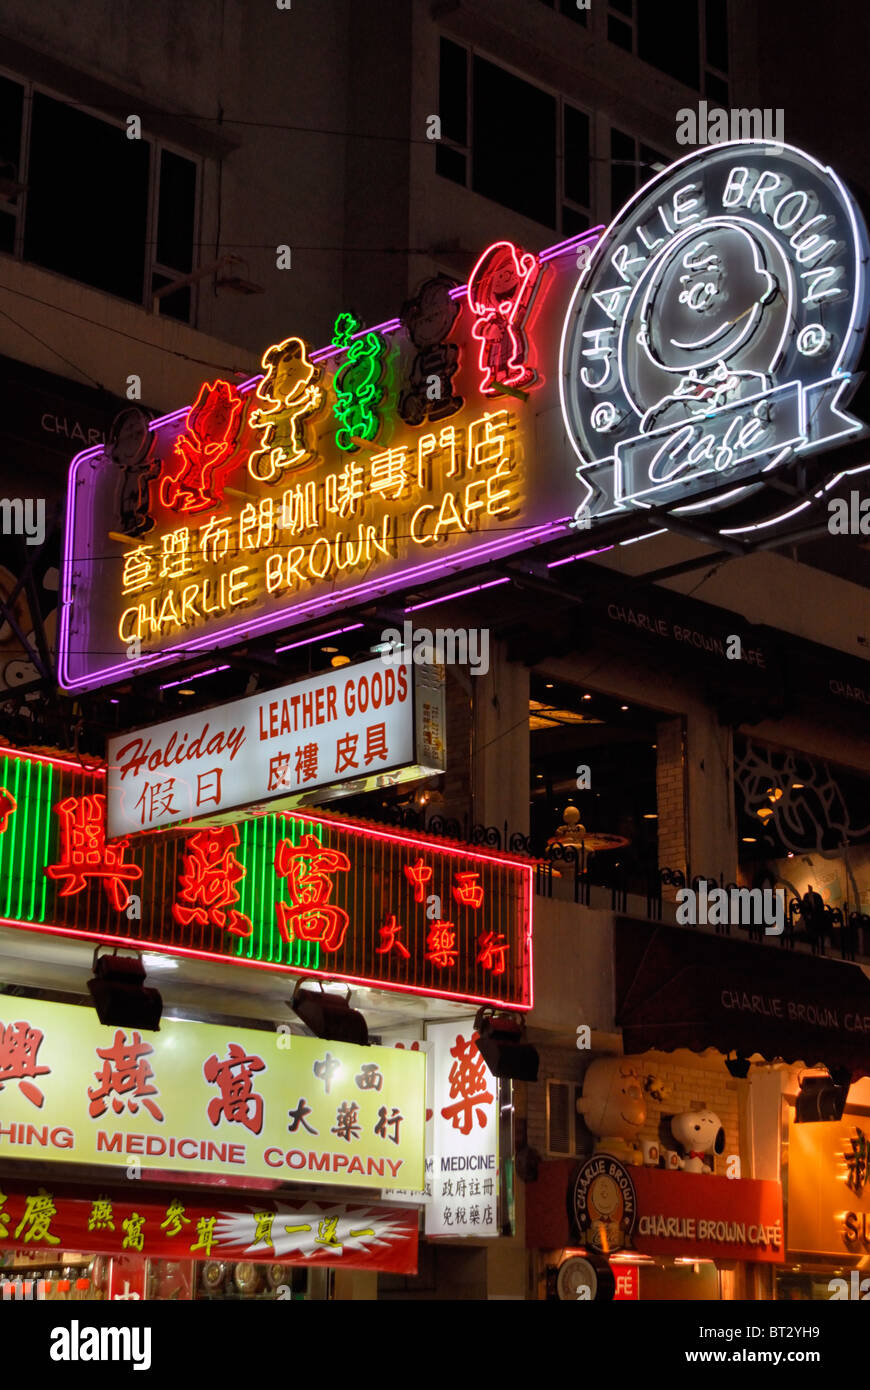 Charlie Brown Cafe,Cameron Road,Kowloon,Hong Kong Stock Photo